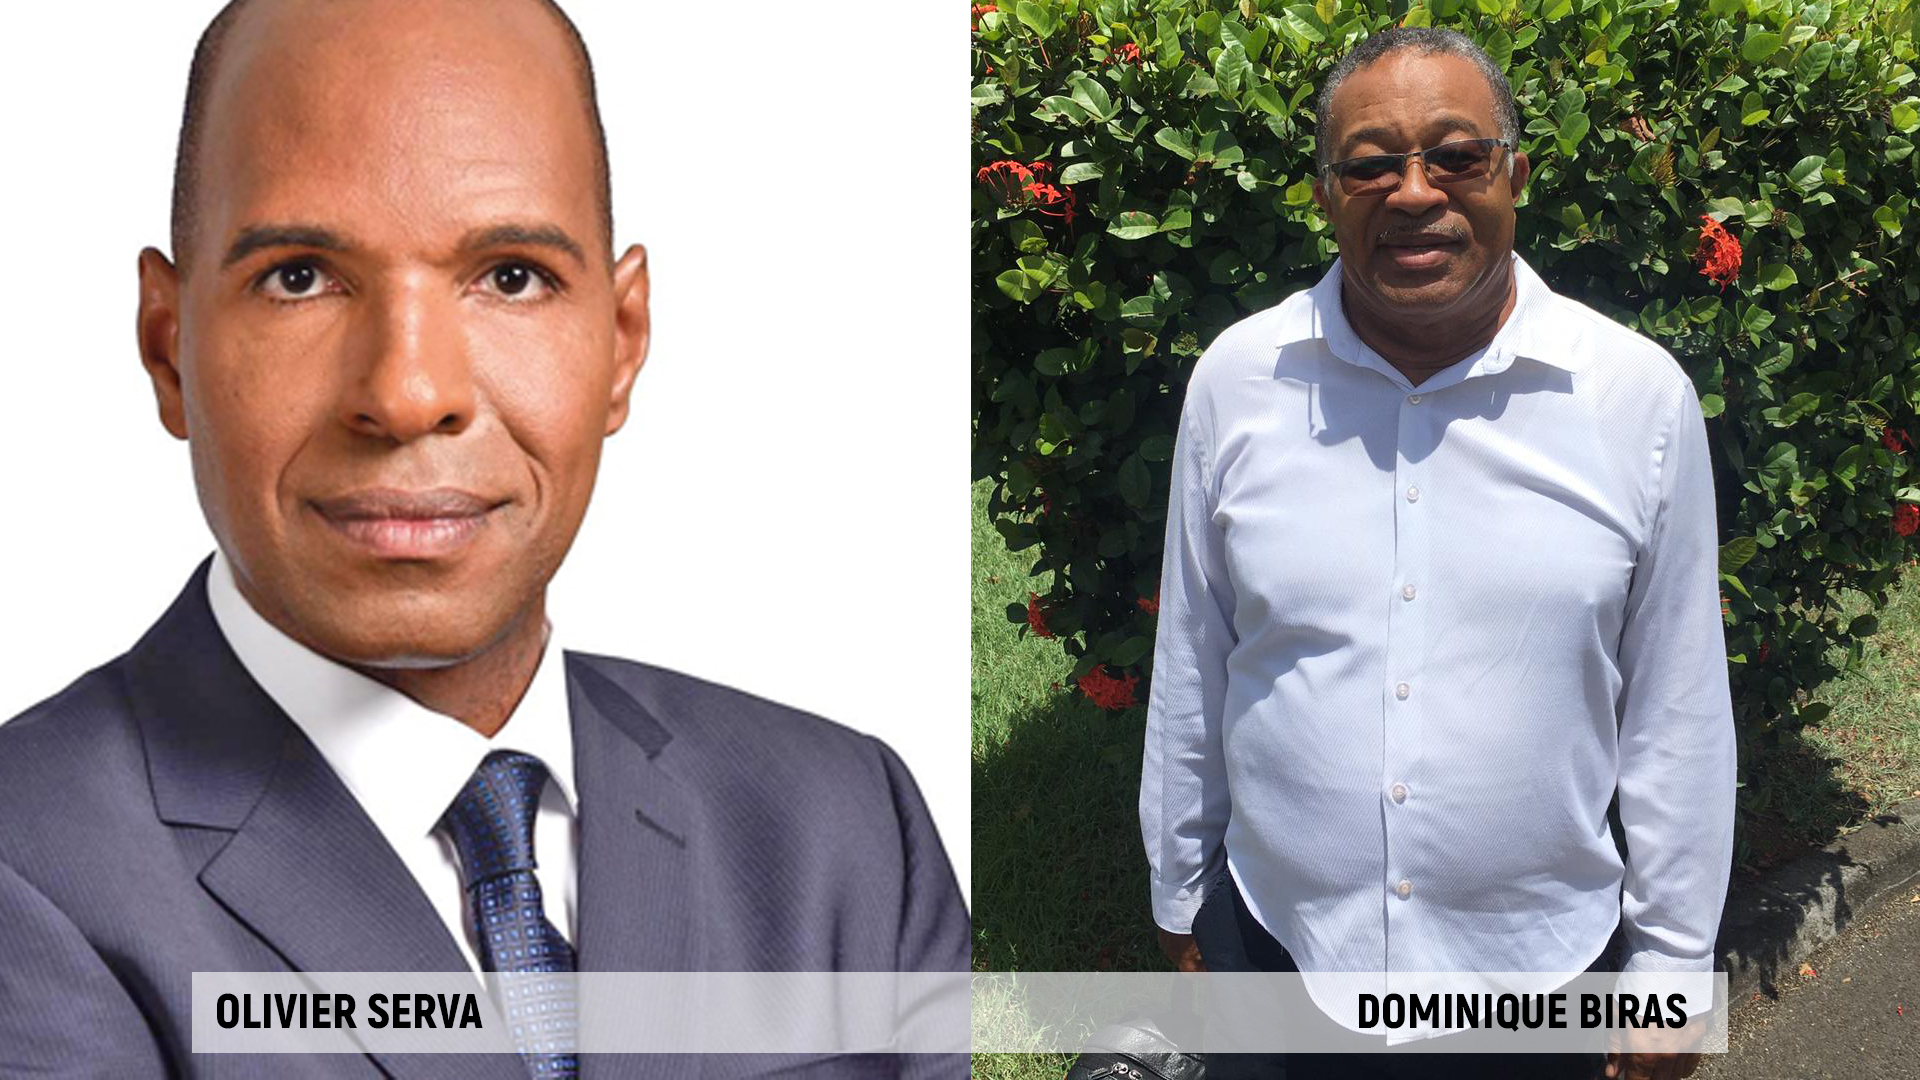     Législatives 2022 : Olivier Serva affrontera Dominique Biras au second tour dans la circonscription 1

